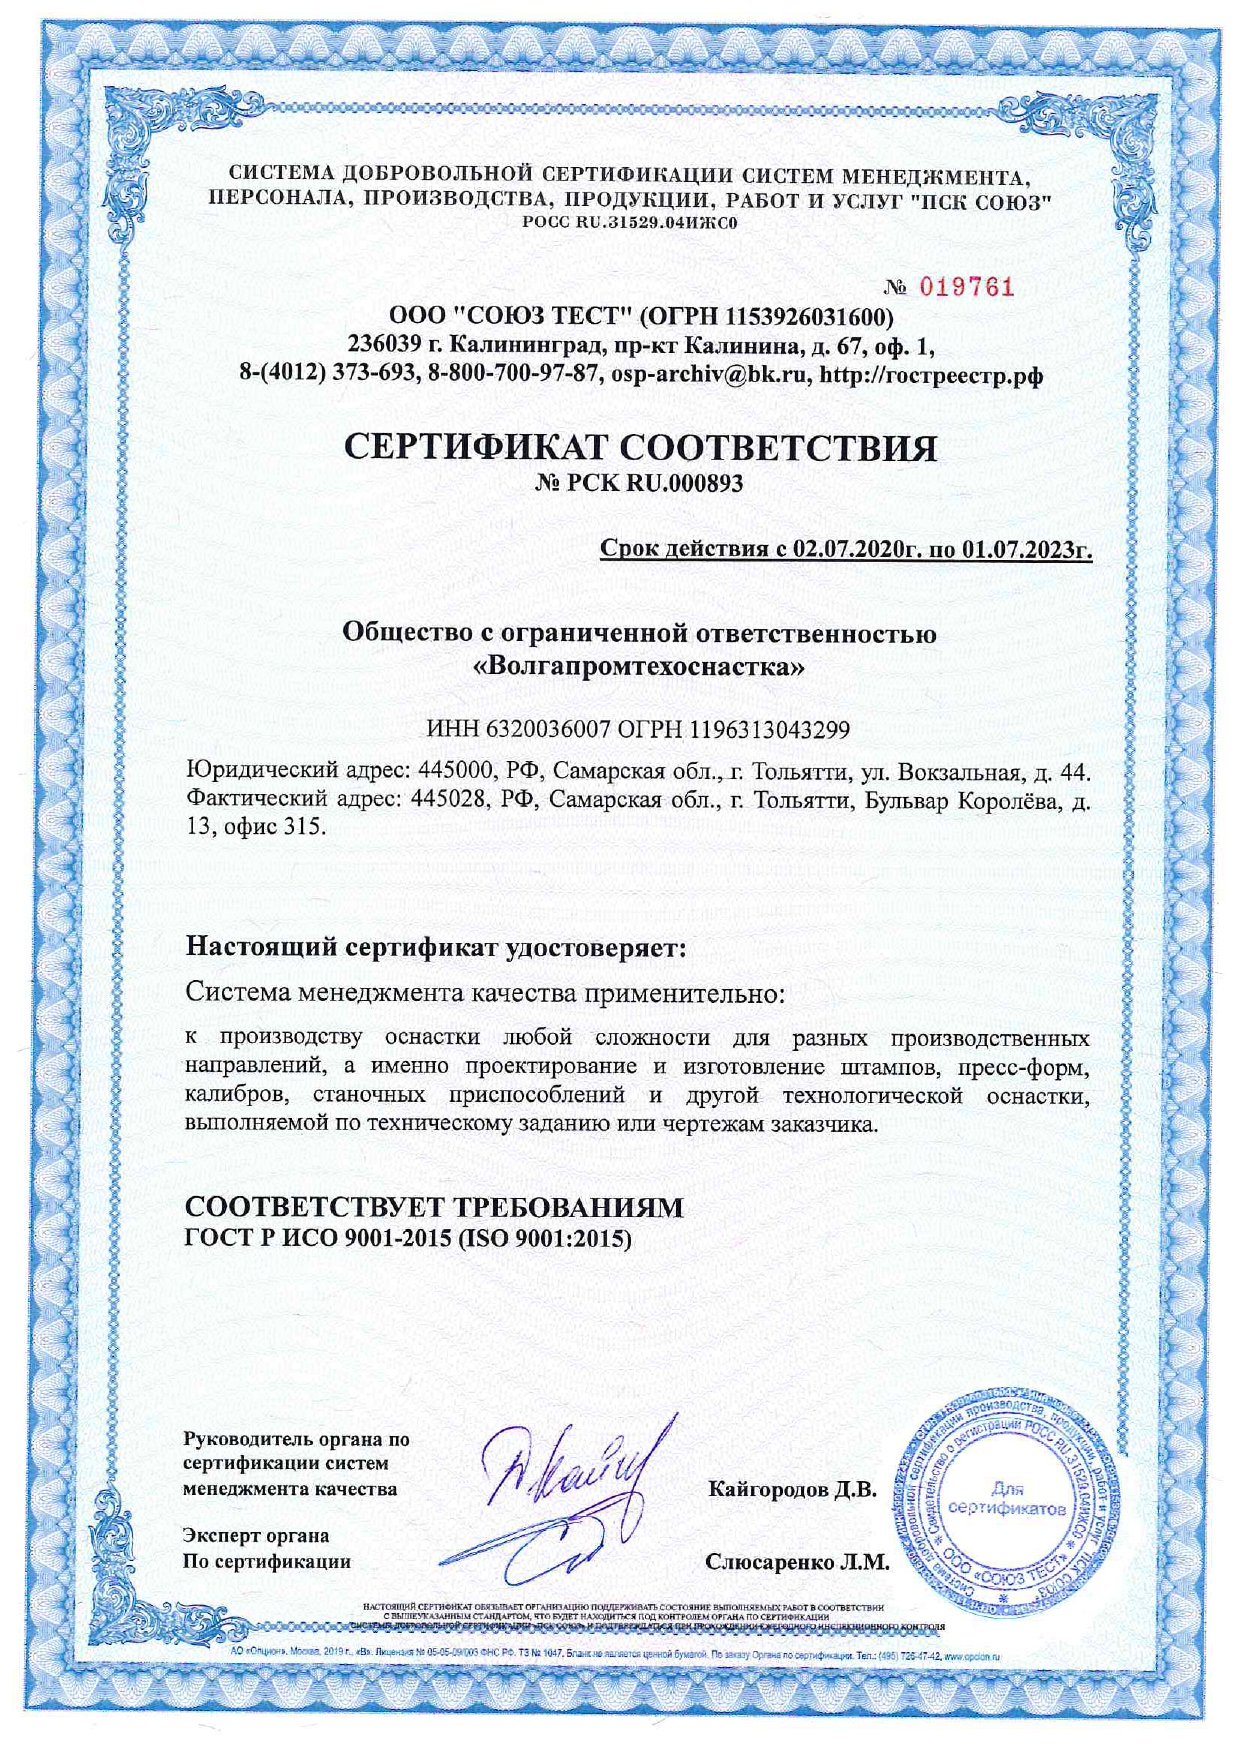 Компания ООО "ВПТО" получила Сертификат соответствия требованиям IS0 9001-2015